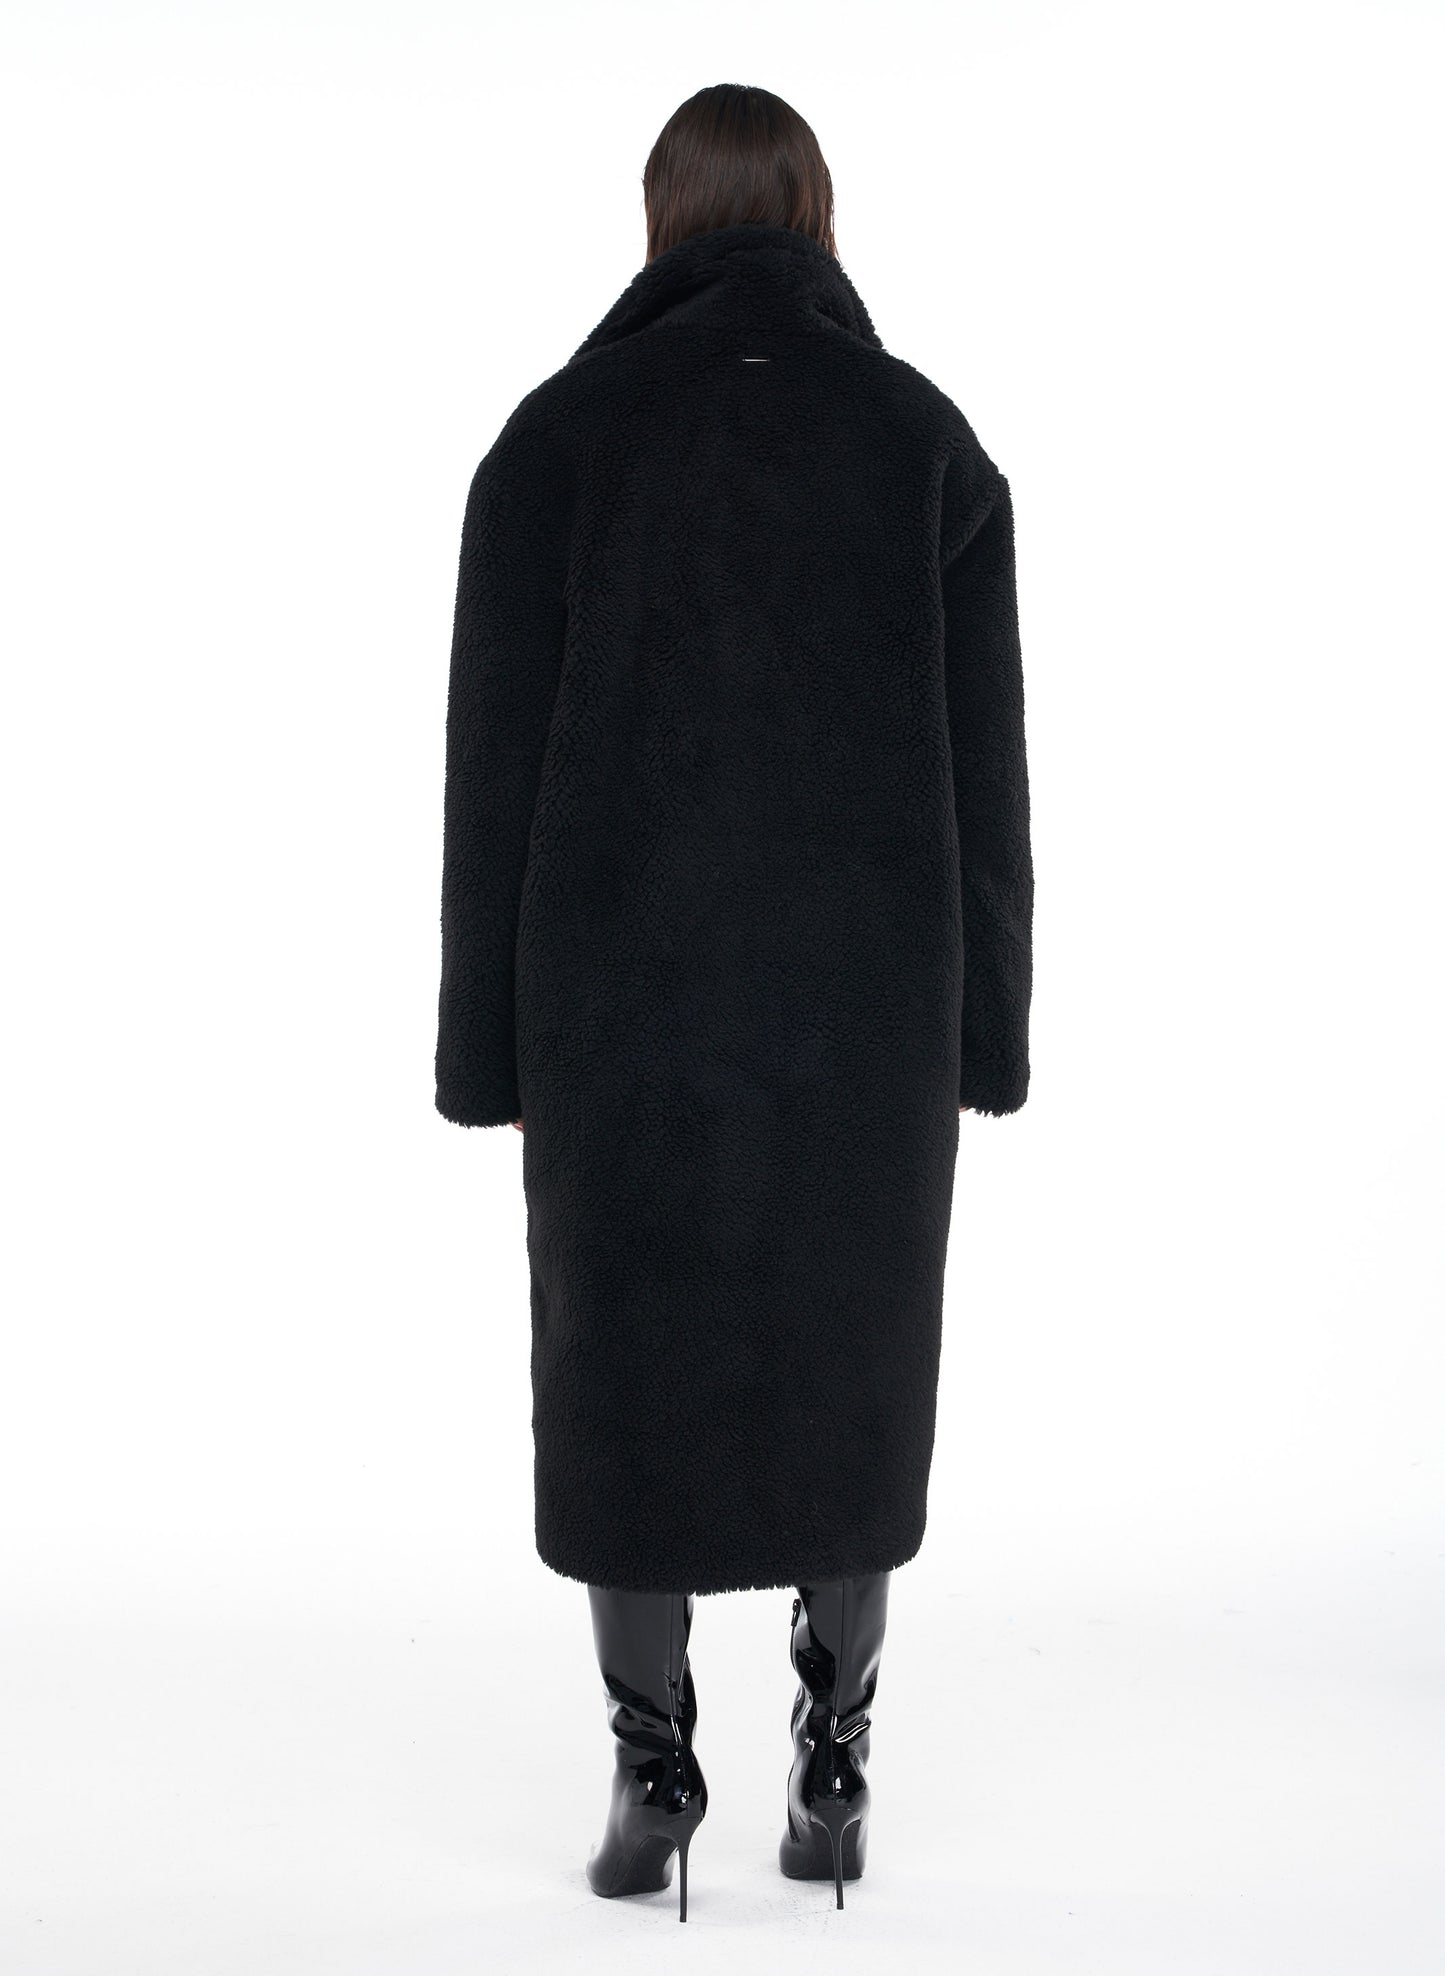 Oversized Fur Coat in Black